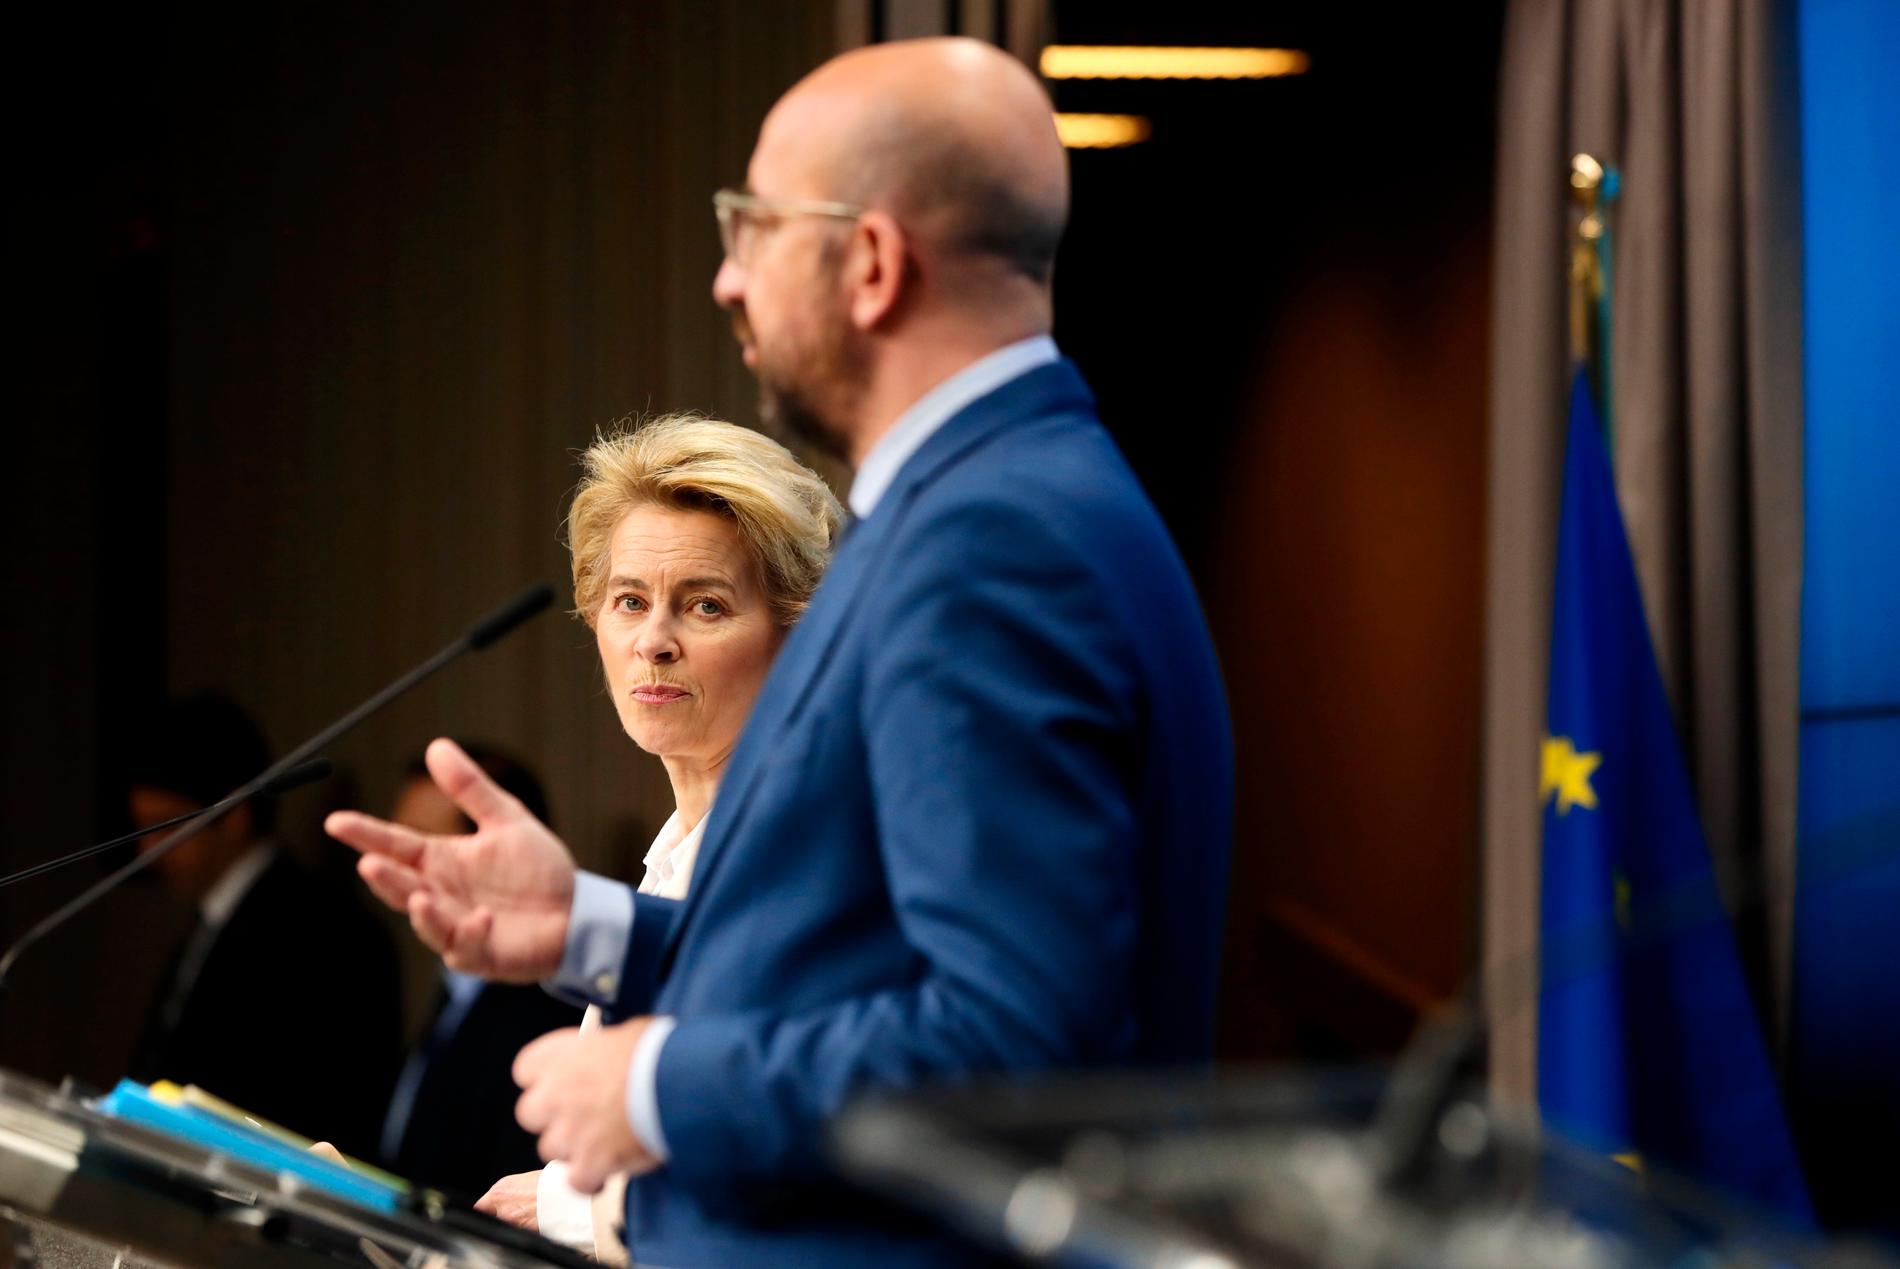 EU:s kommissionsordförande Ursula von der Leyen och permanente rådsordförande Charles Michel utlovar en akut ekonomisk insats för att mota coronakrisens verkningar.